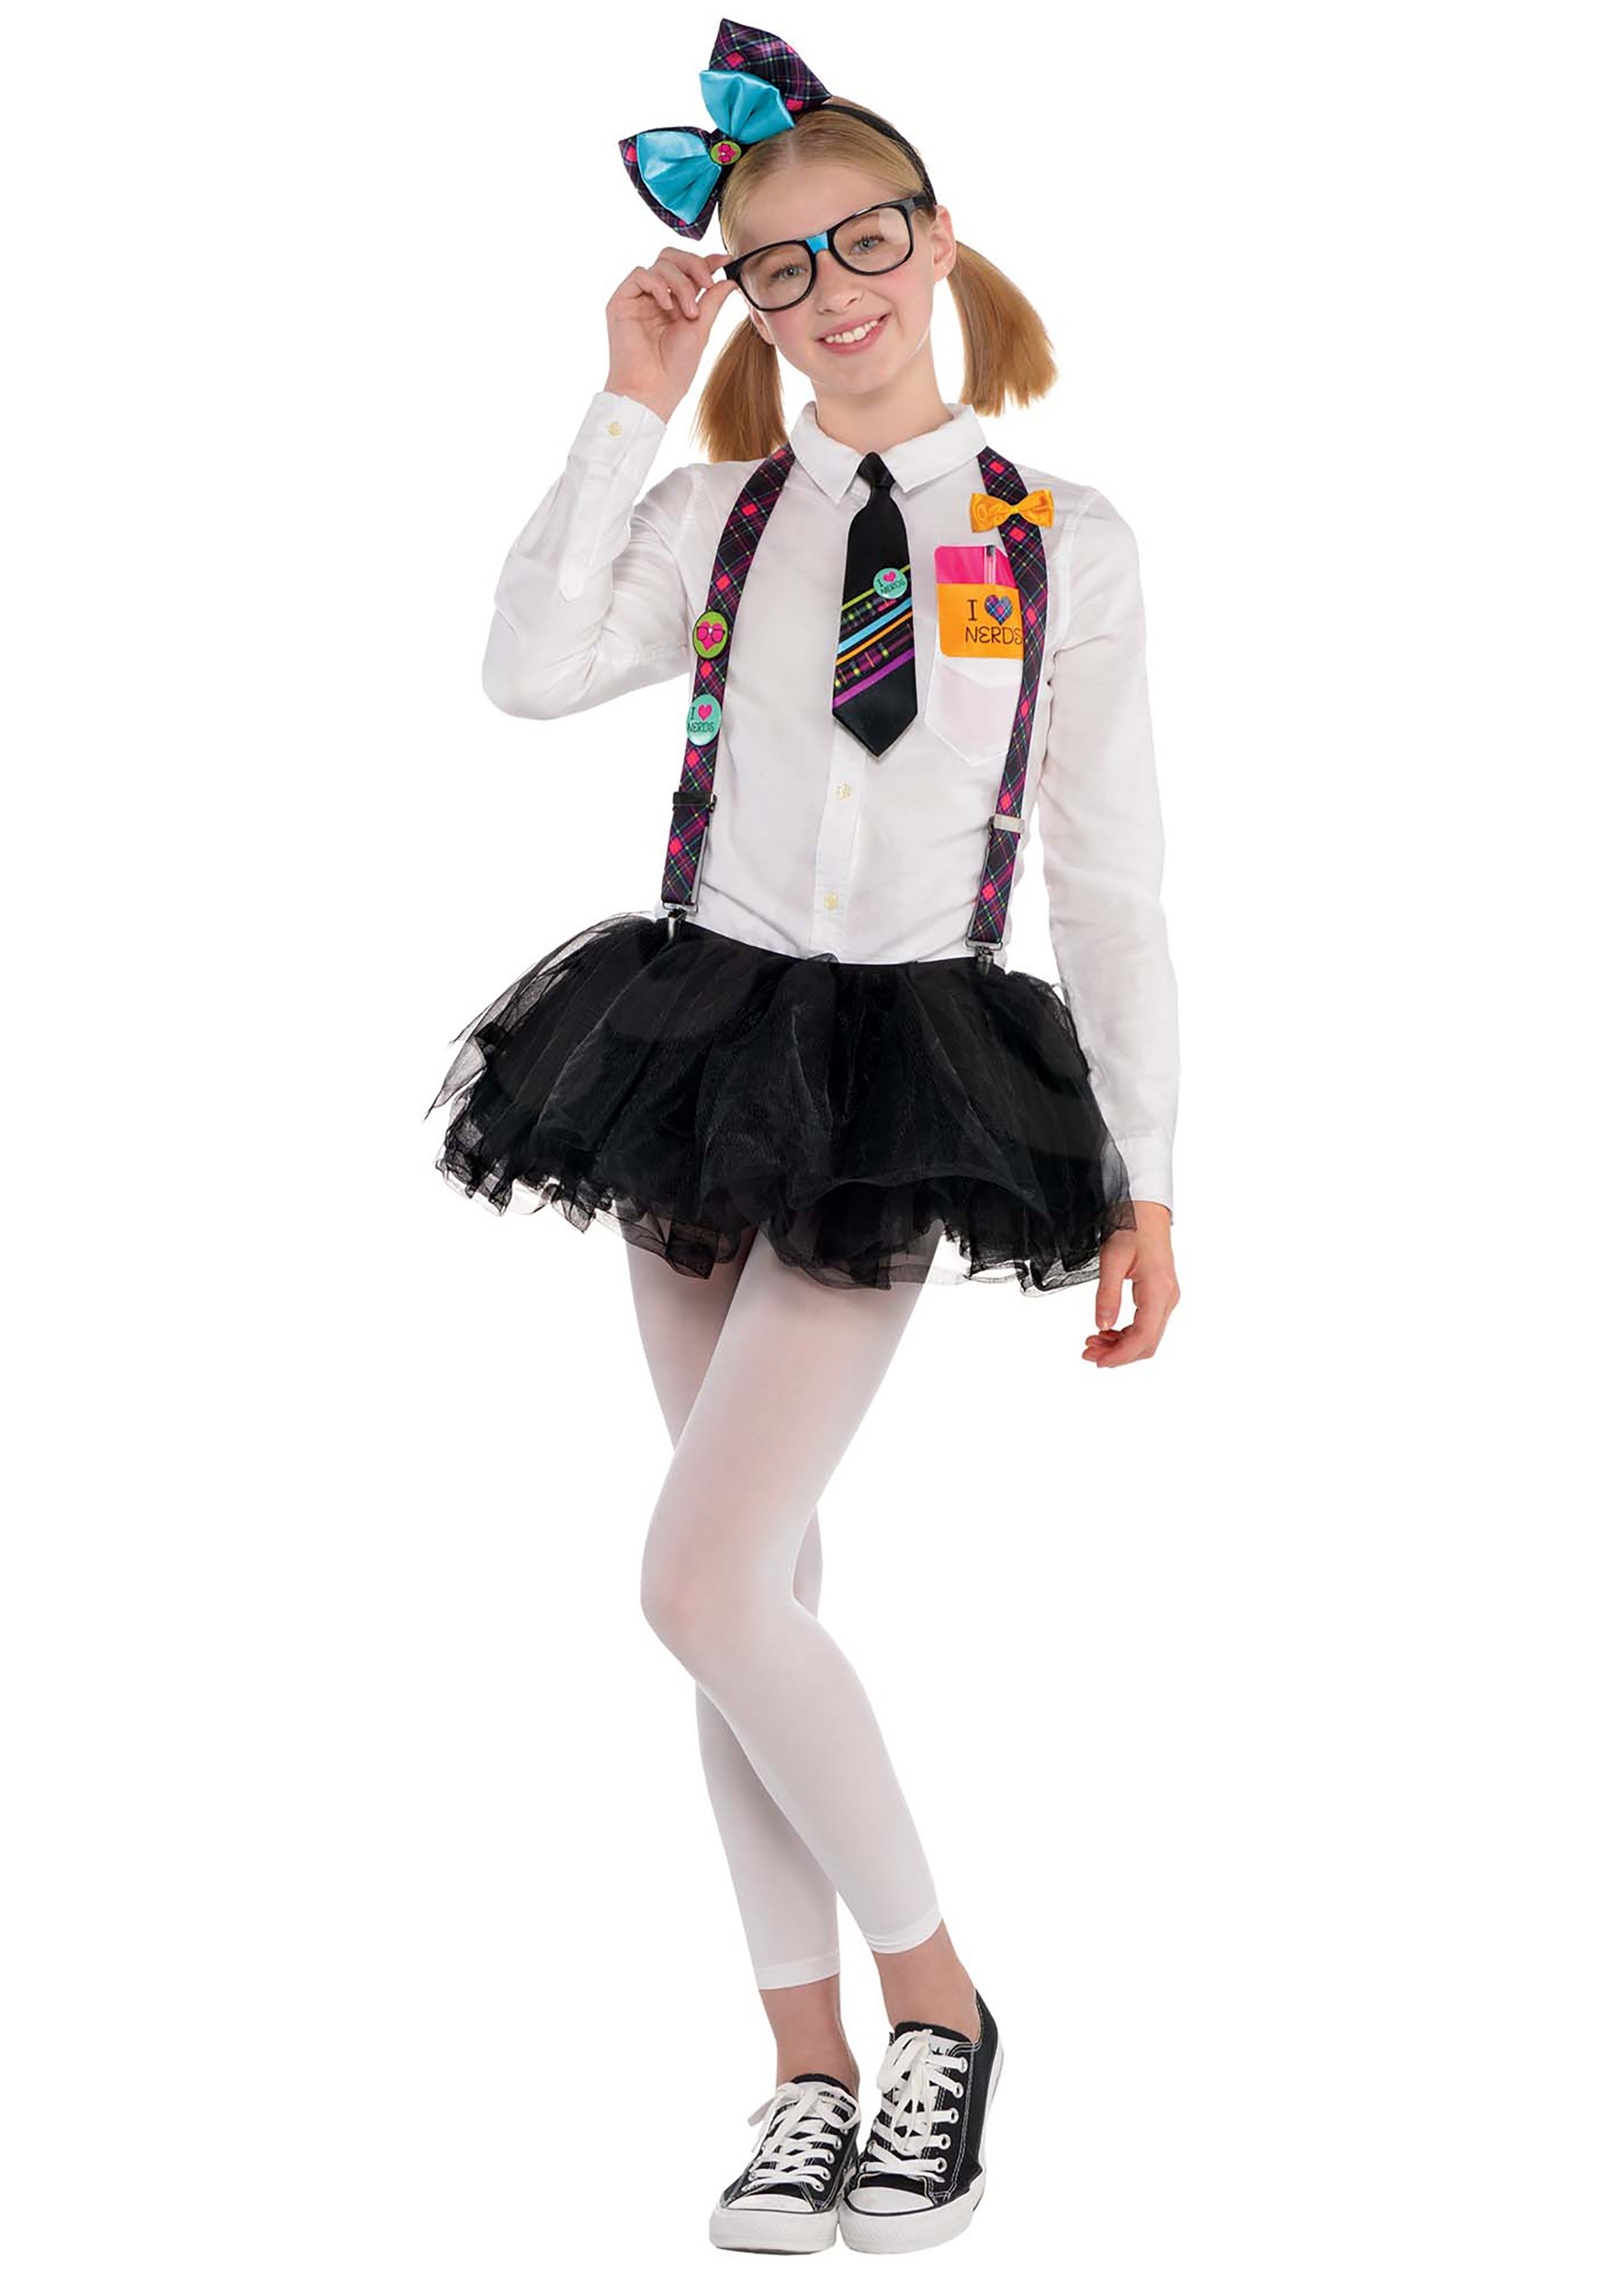 Nerd Costume For Teenage Girls